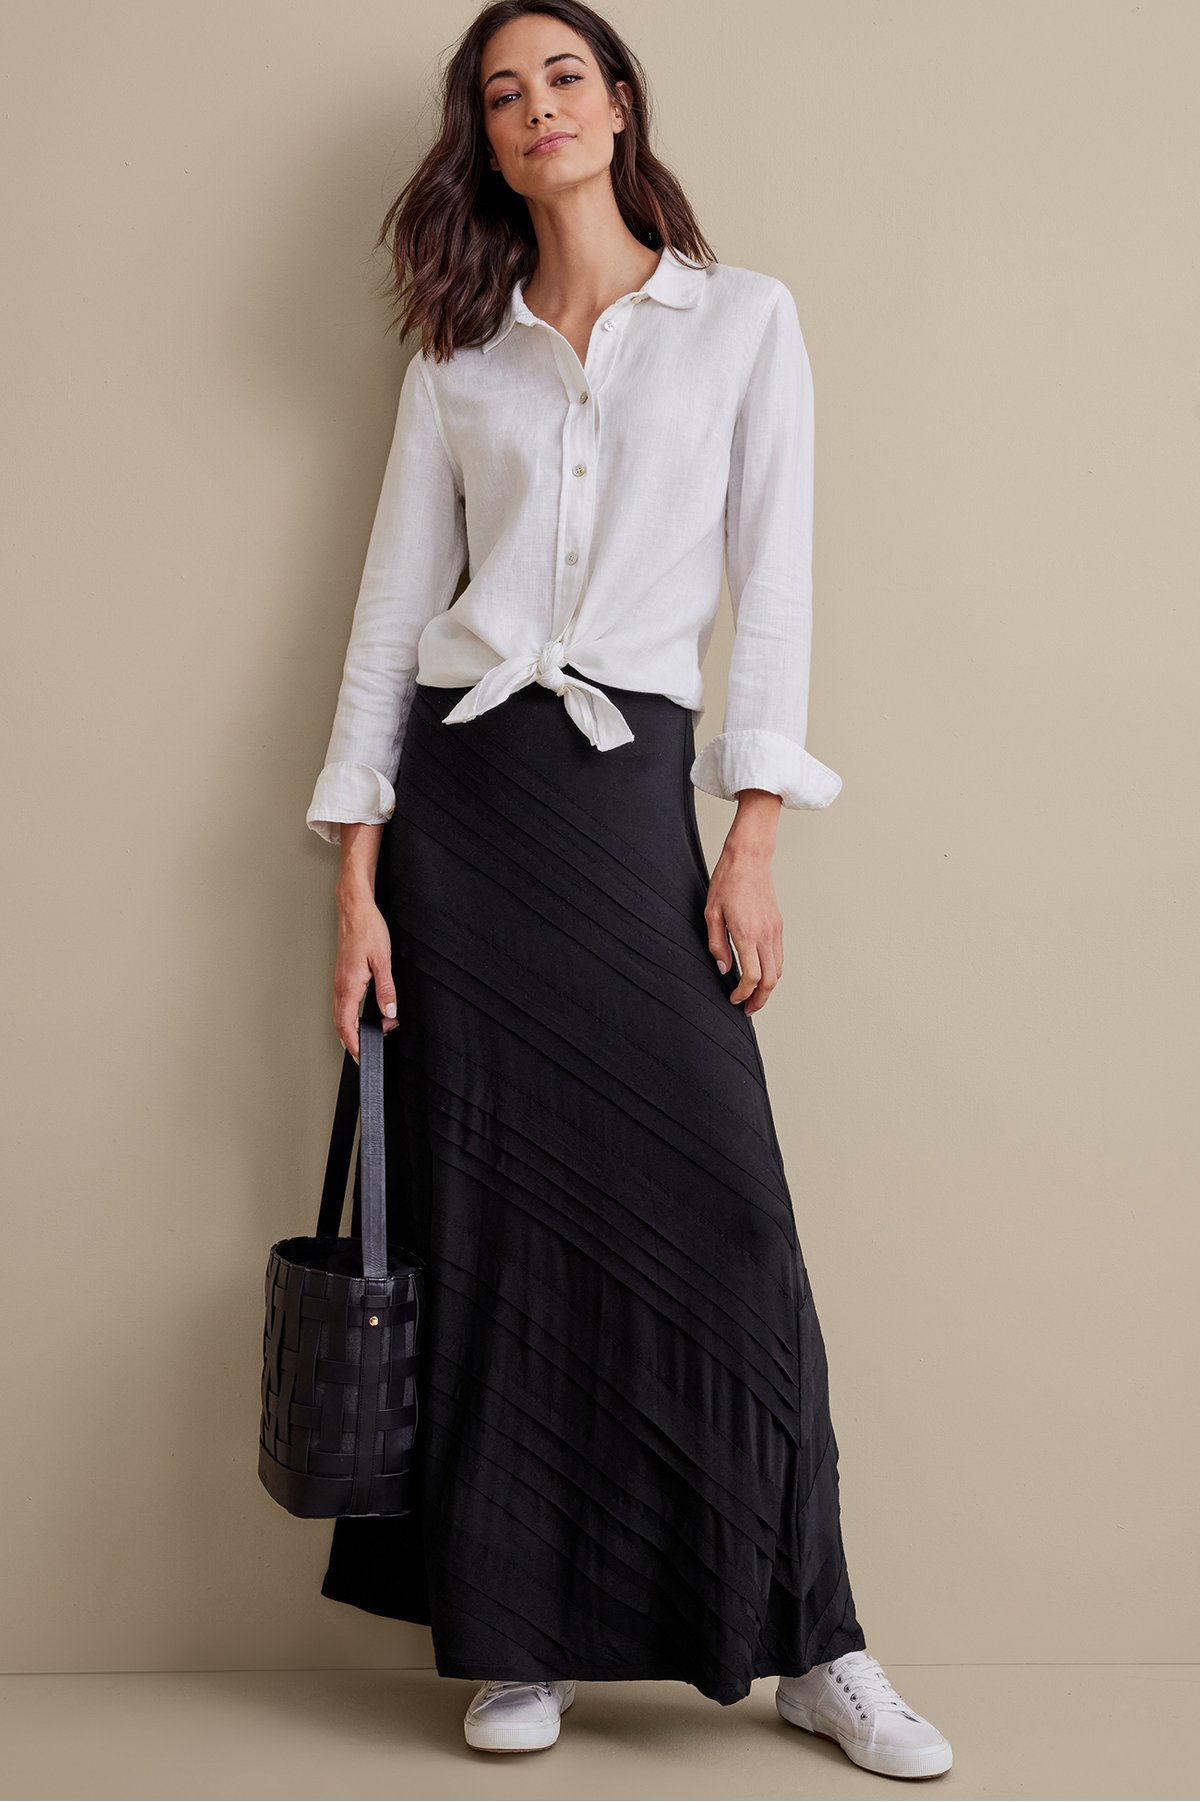 Women's Rosemary Skirt by Soft Surroundings, in Bl...